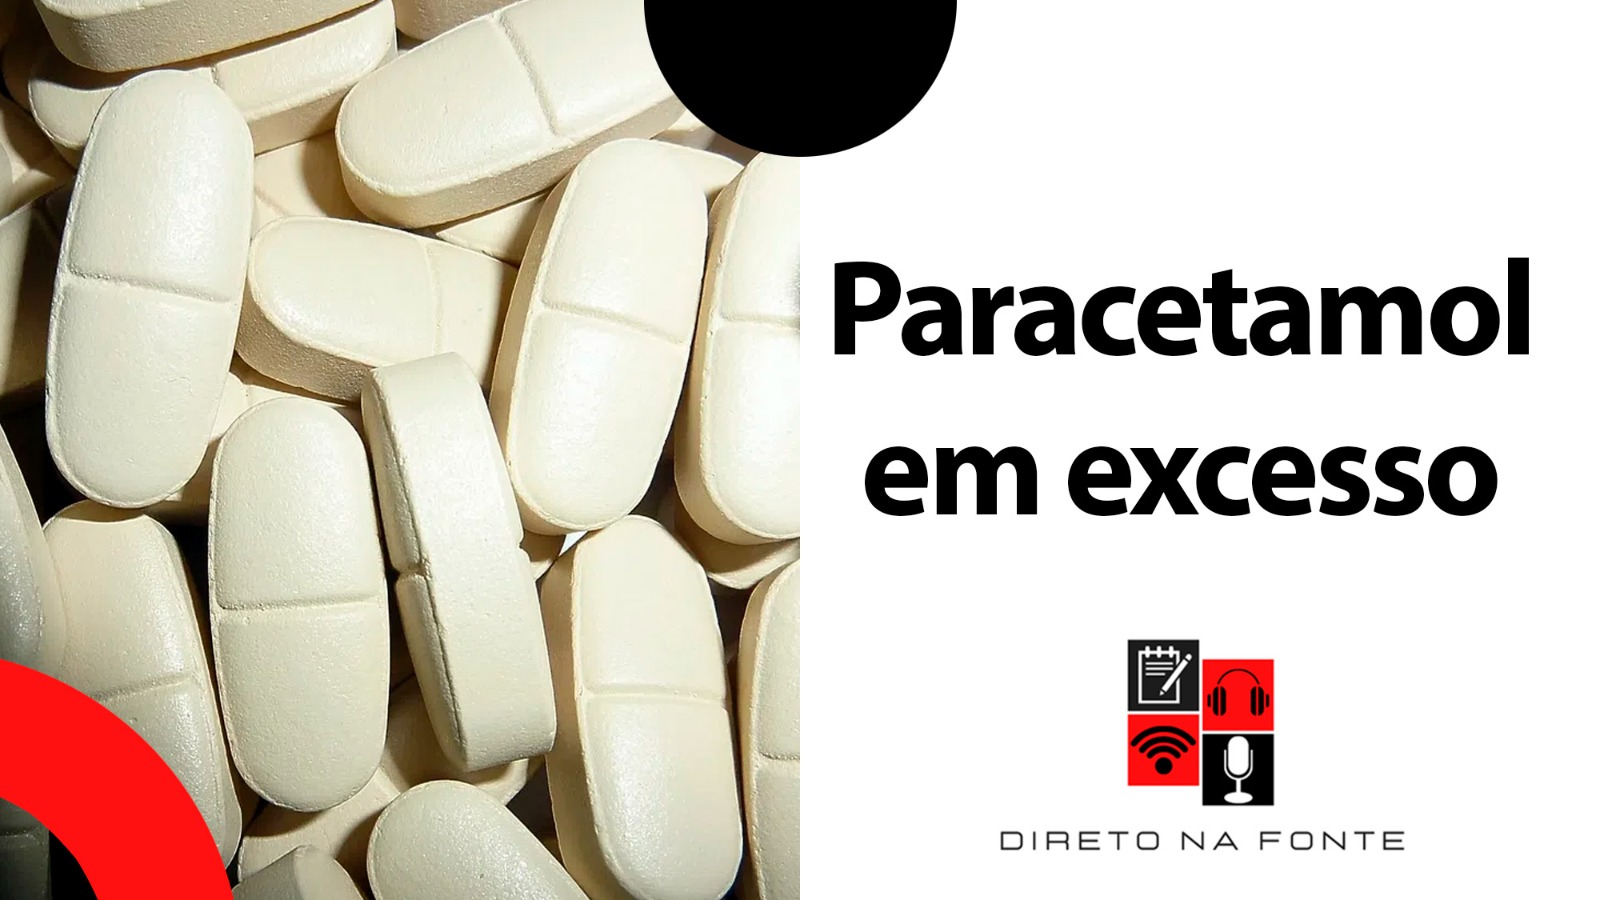 imagem de cápsulas de paracetamol com legenda paracetamol em excesso